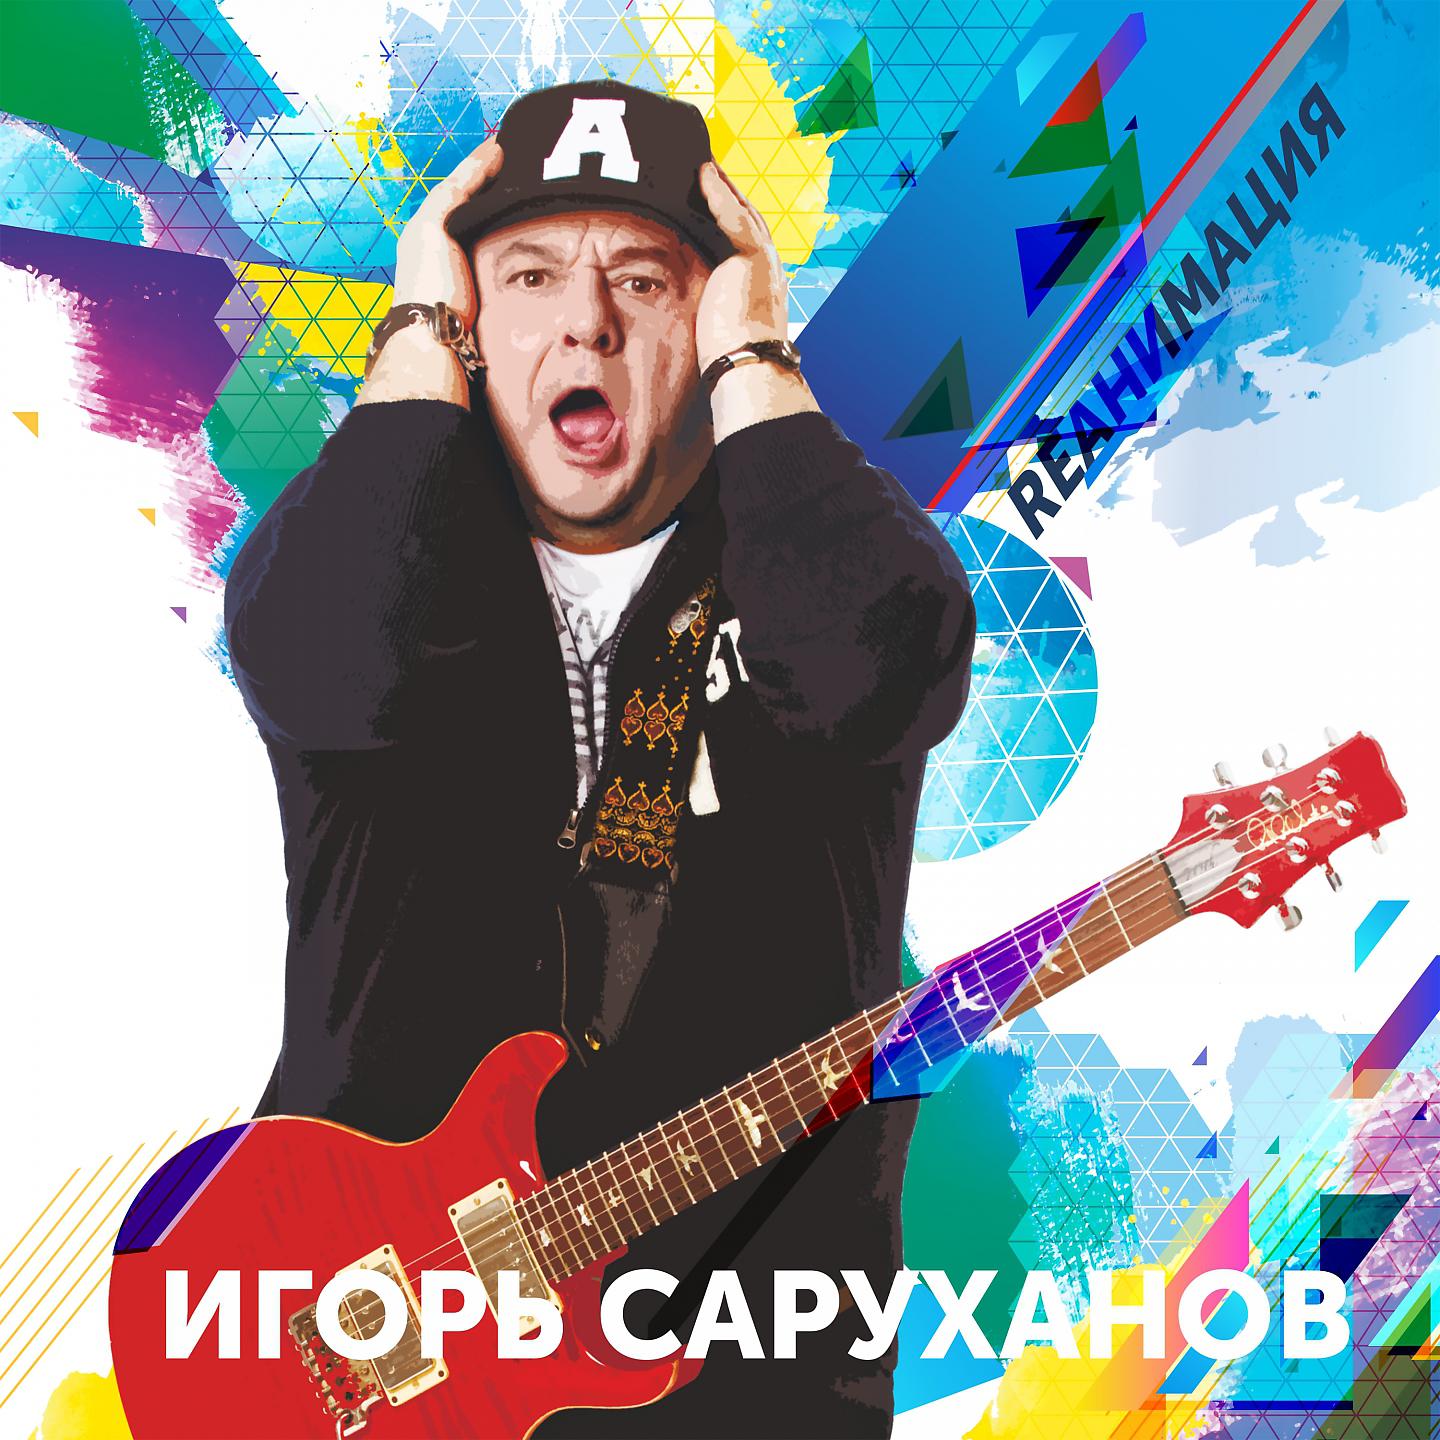 Игорь Саруханов - Каракум (Dance version 2018)